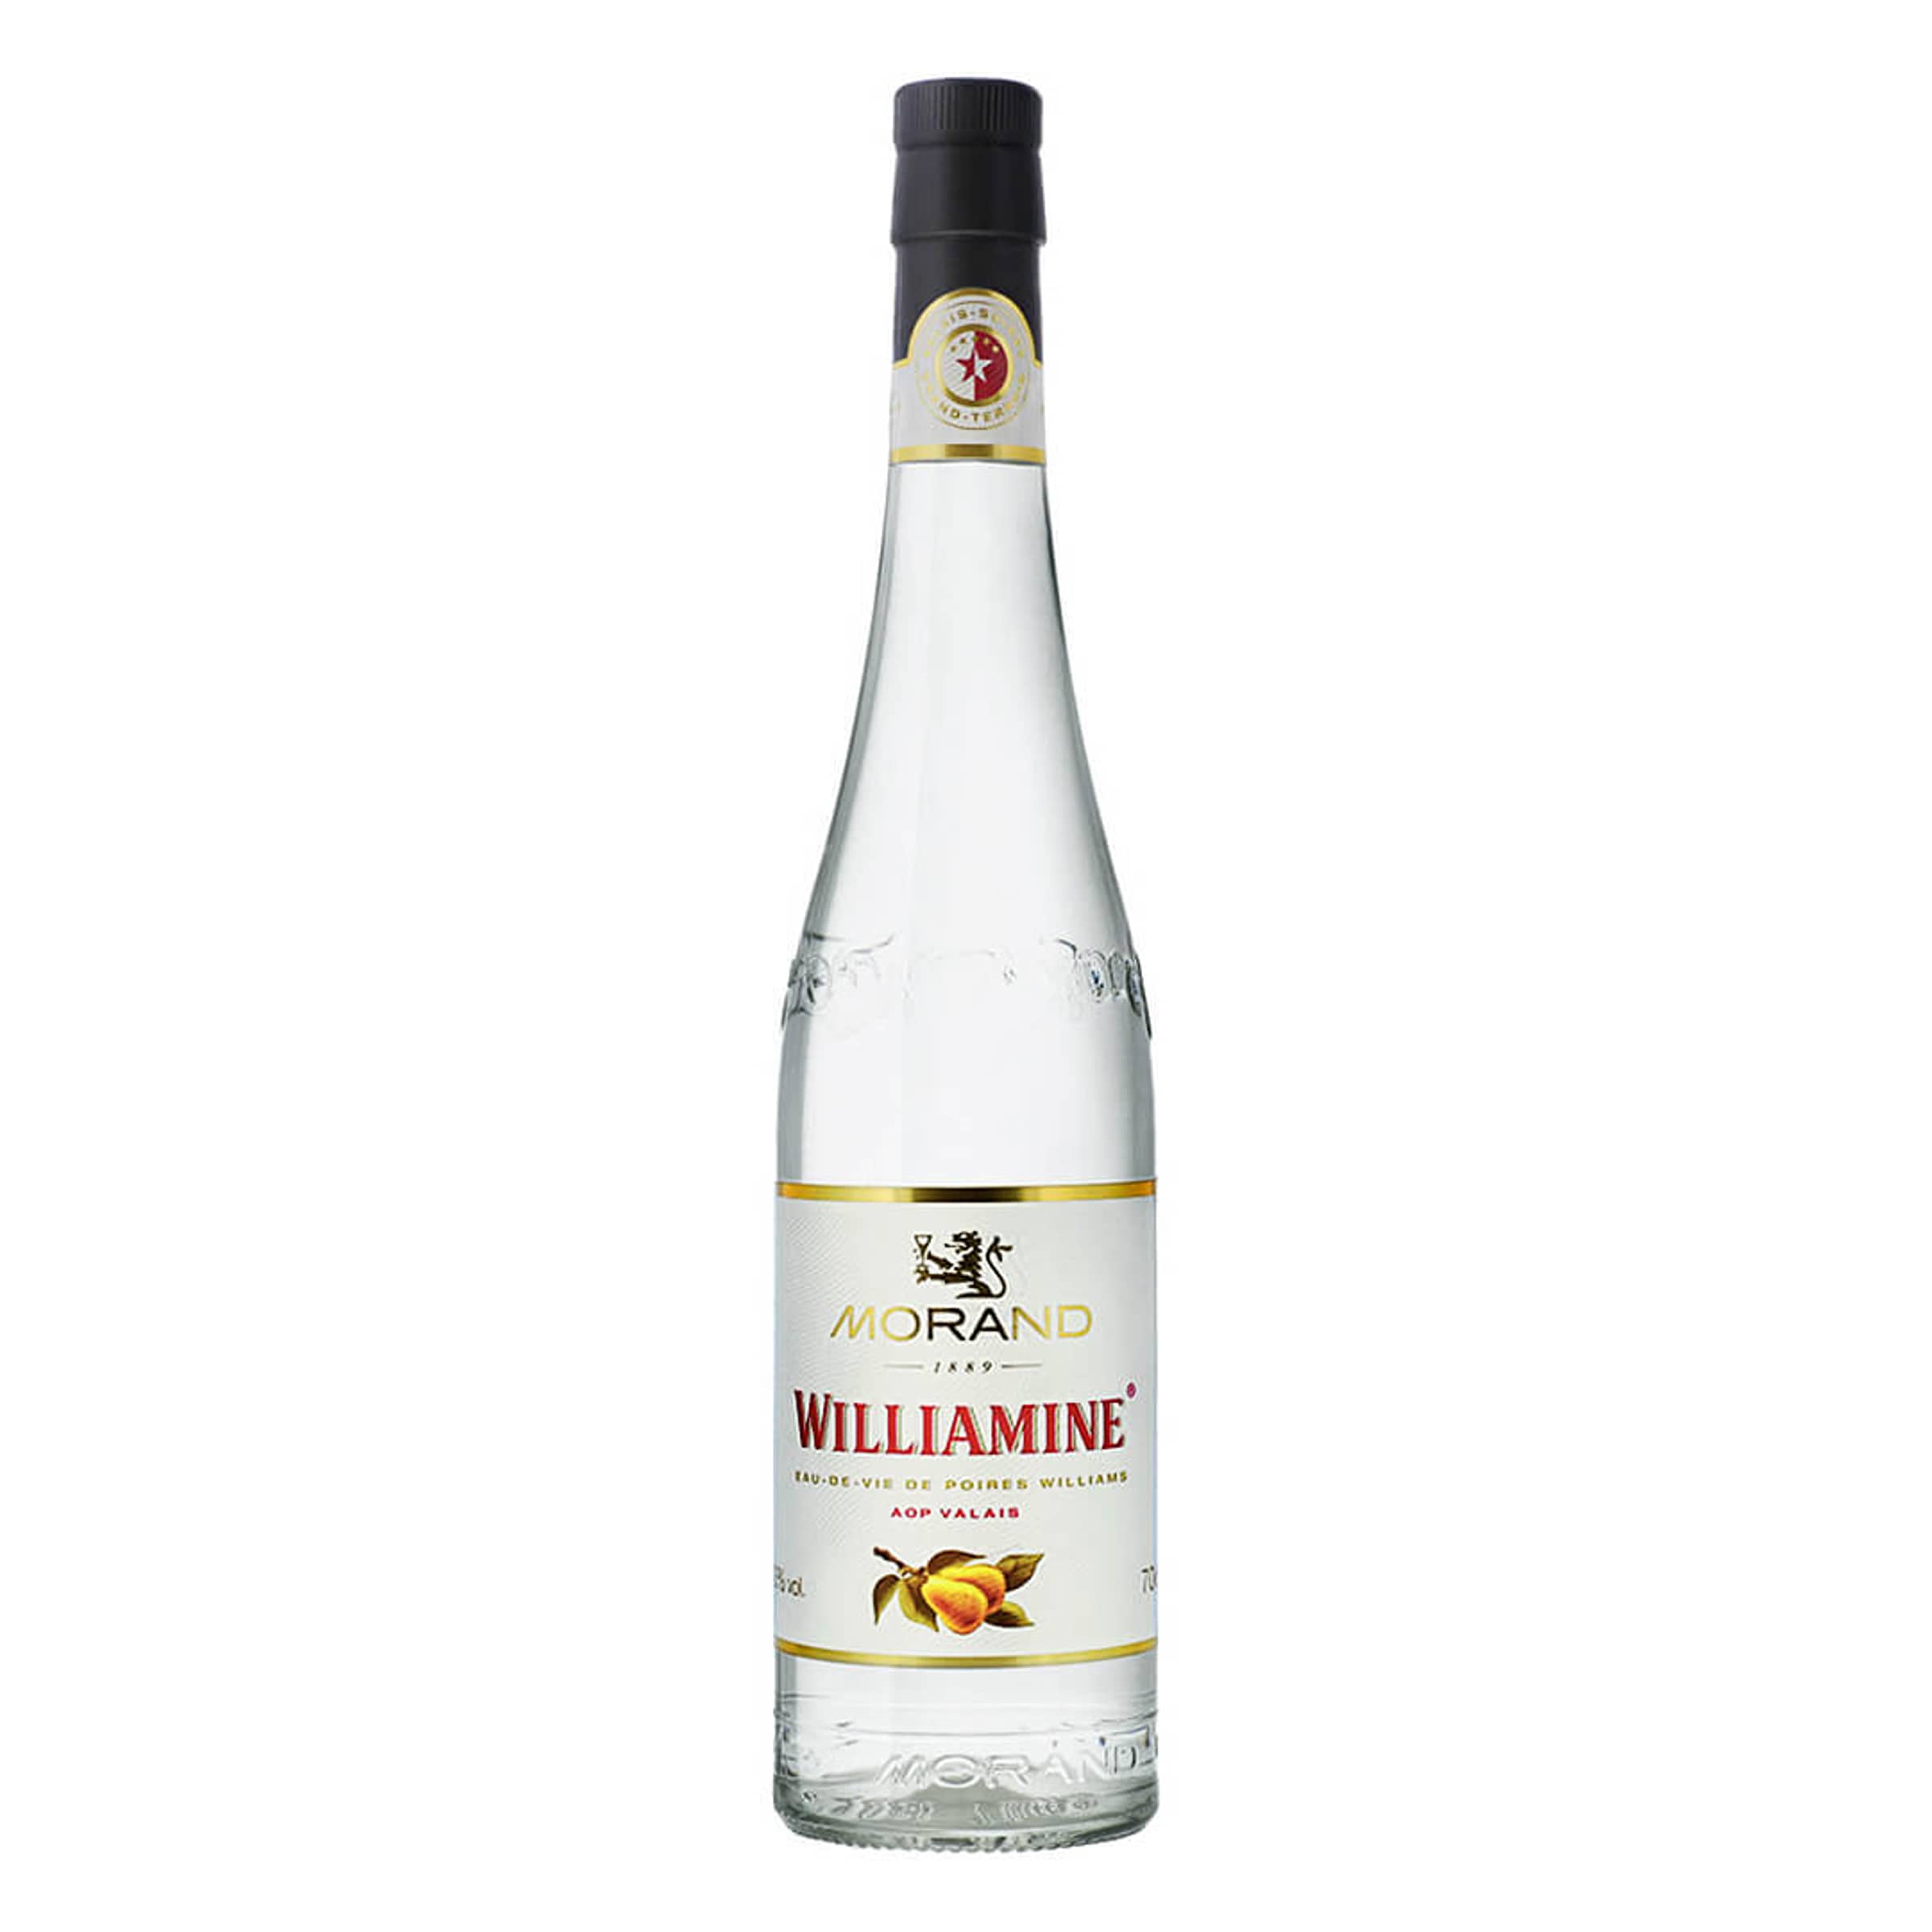 La Williamine - eau de vie de Poire Williams AOP du Valais